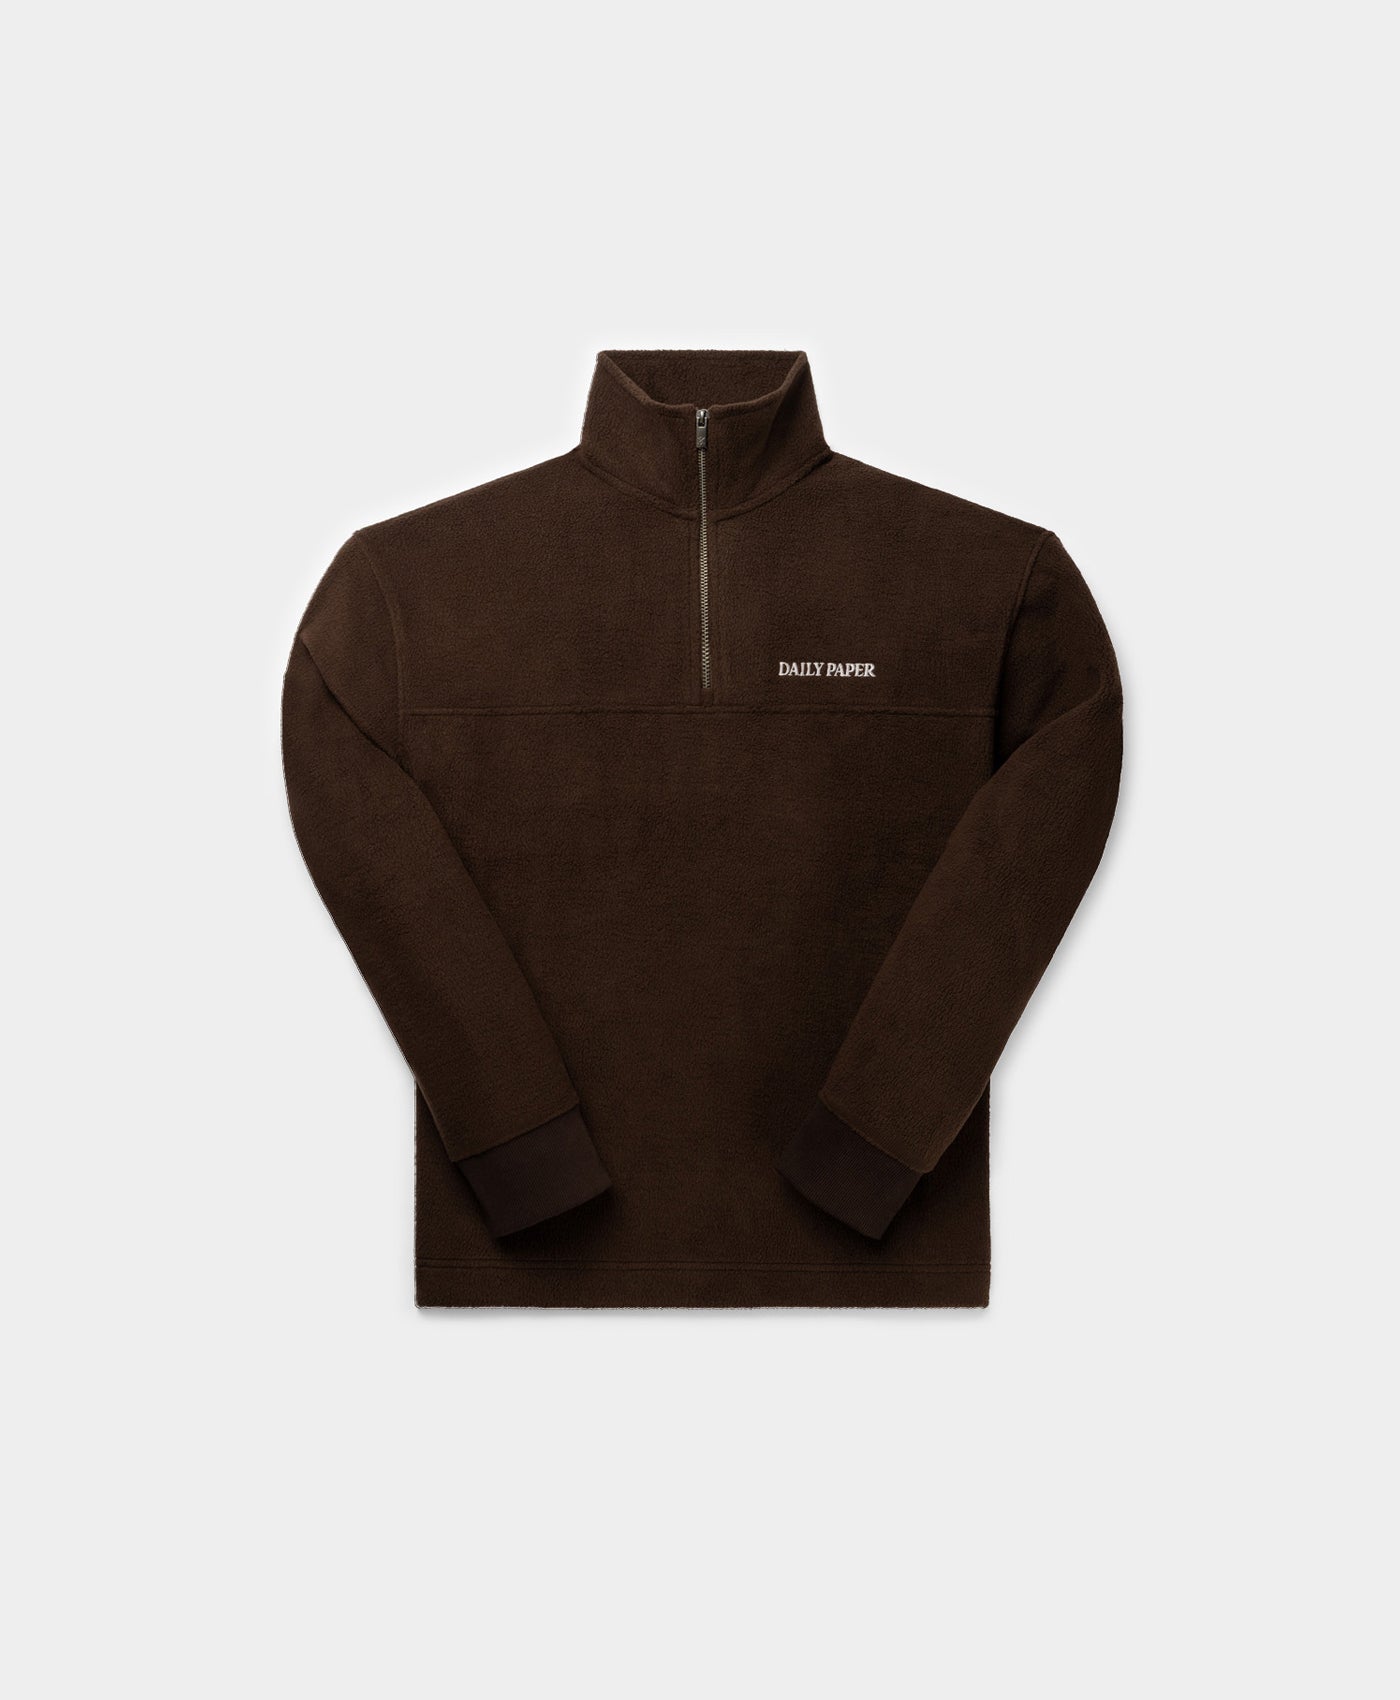 DP - Syrup Brown Ramat Sweater - Packshot - Rear